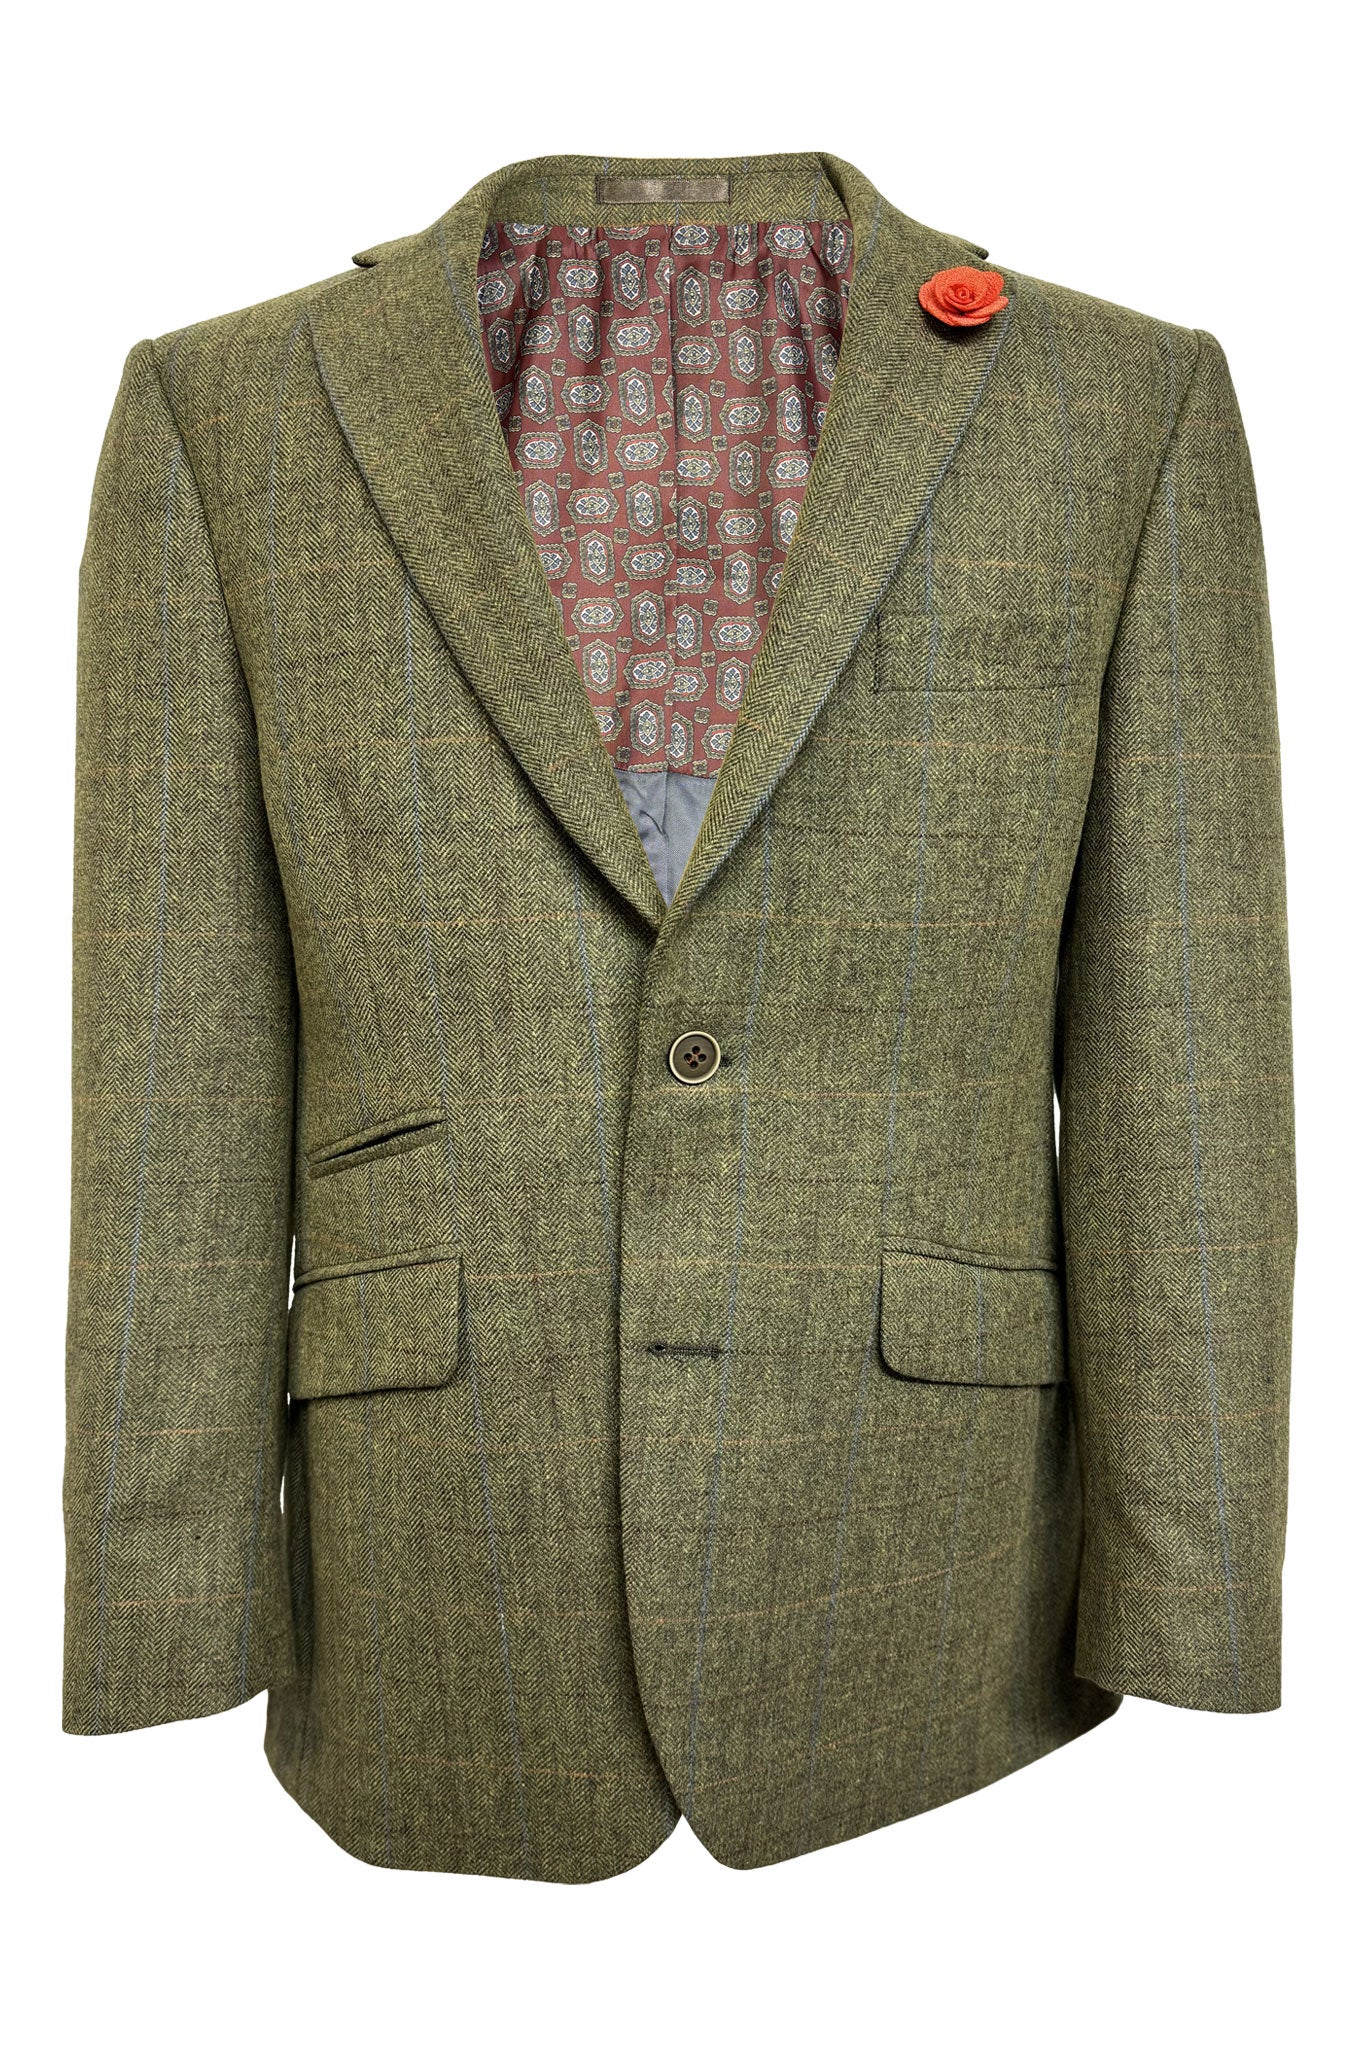 Men's Tweed Wool Green Check Jacket